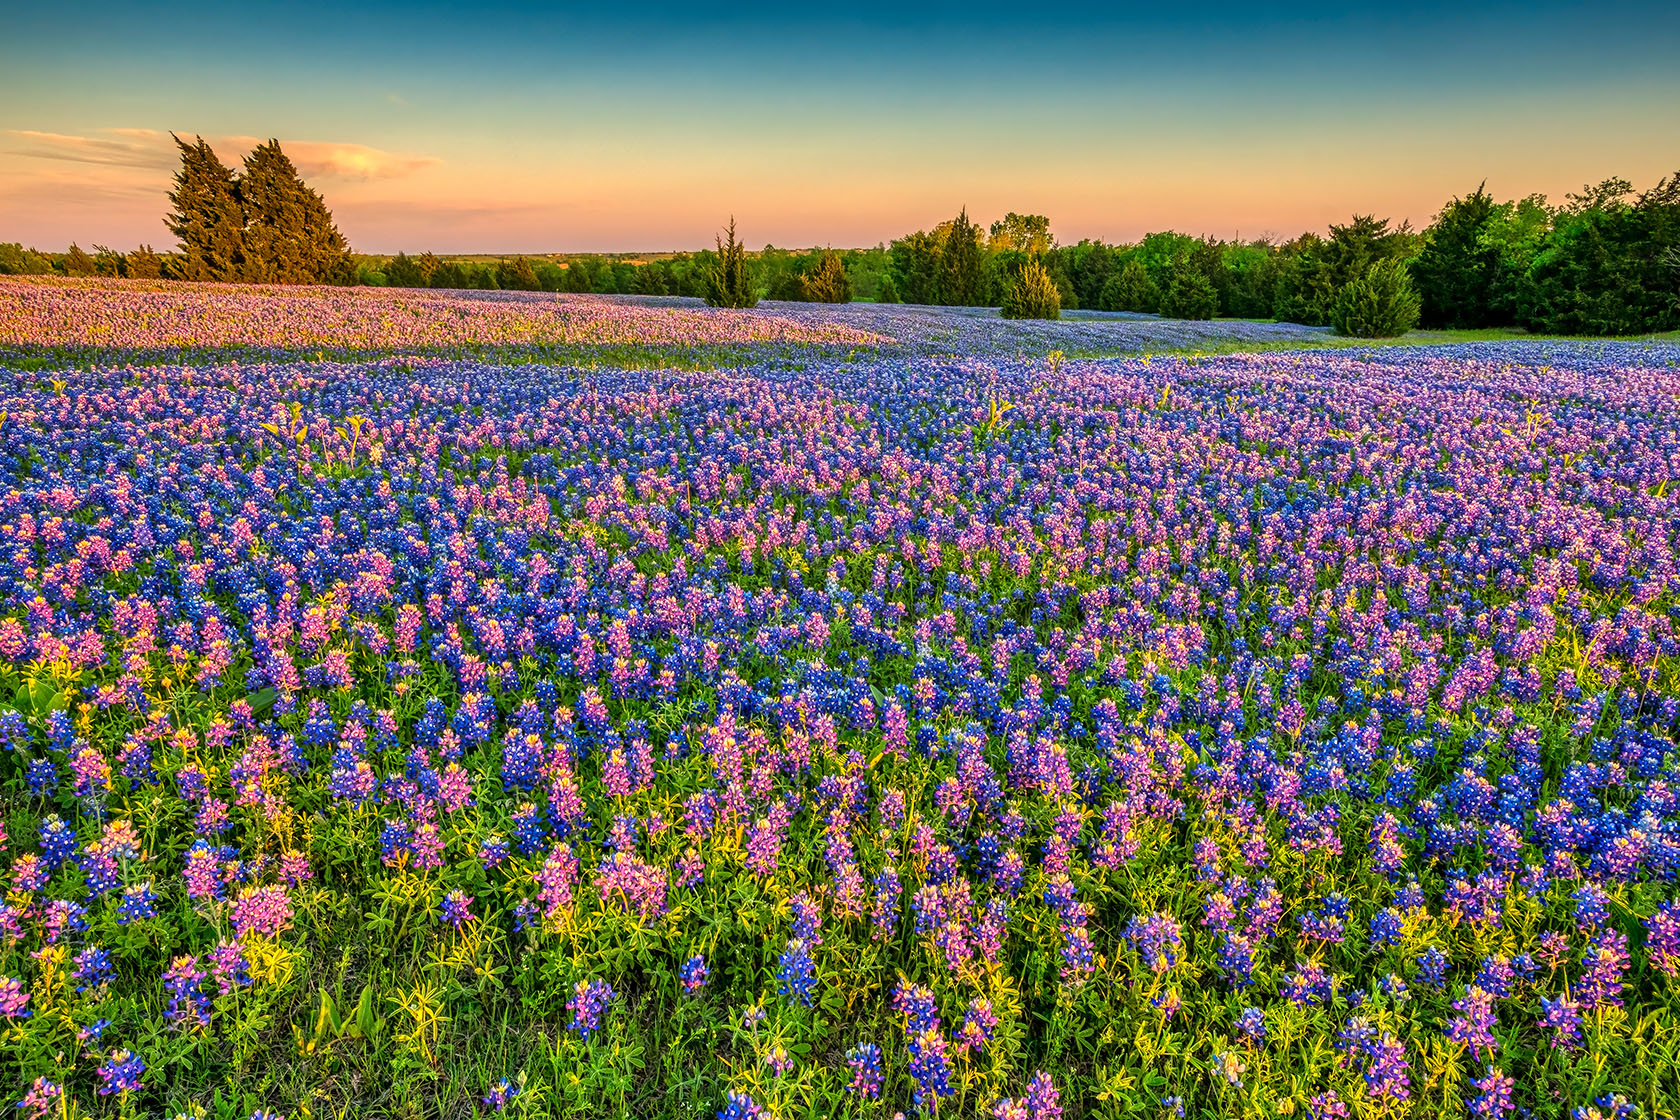 2024年德克萨斯州的蓝花季将是一个“辉煌的年份”